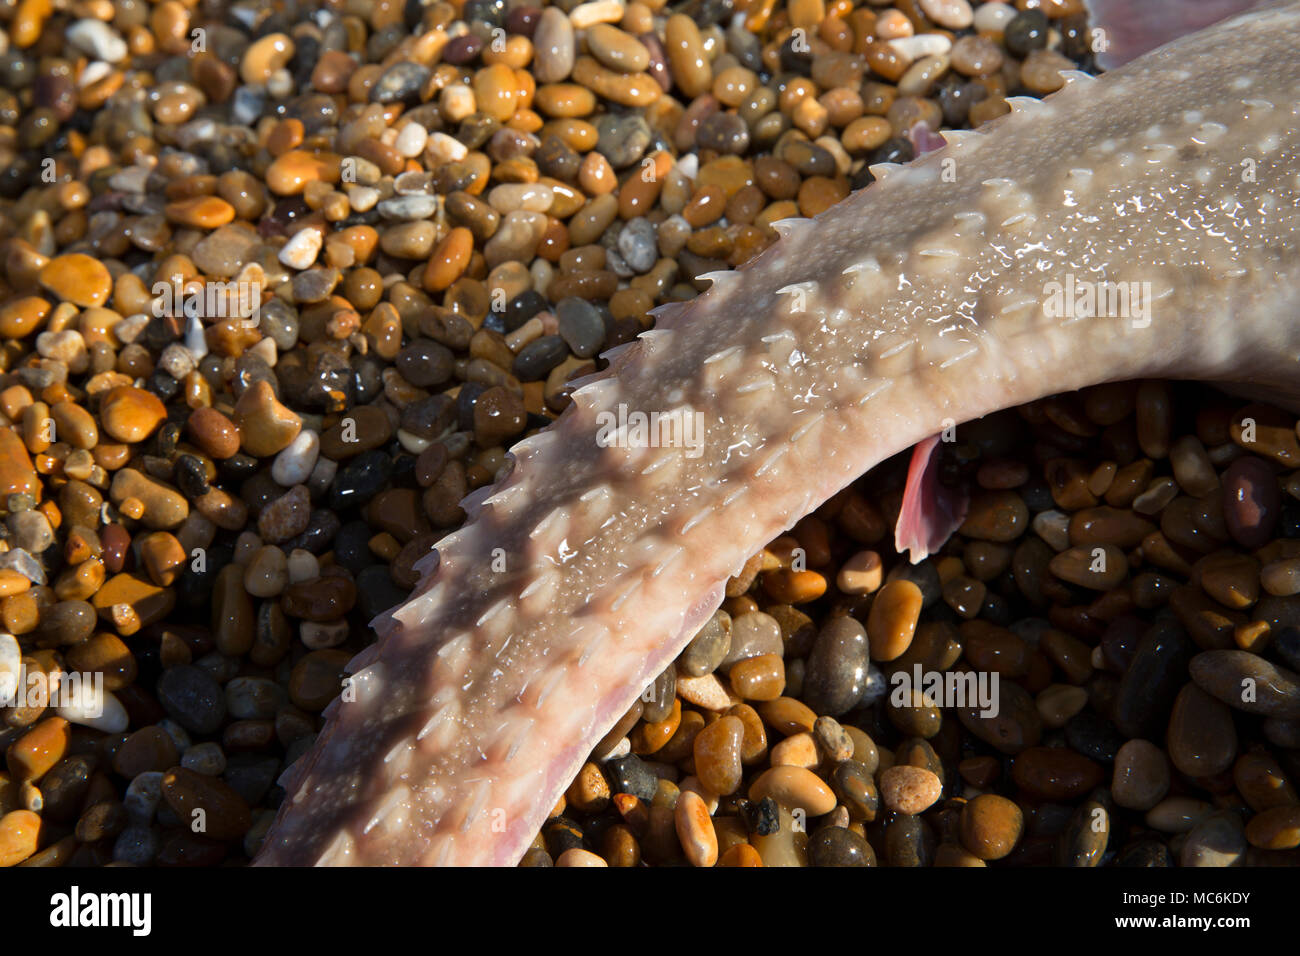 Un ondulent ray, Raja undulata, pris à partir de la plage de Chesil dans Dorset avant d'être retournés vivants montrant des épines ou crampons sur sa queue. L'ondulent ray h Banque D'Images